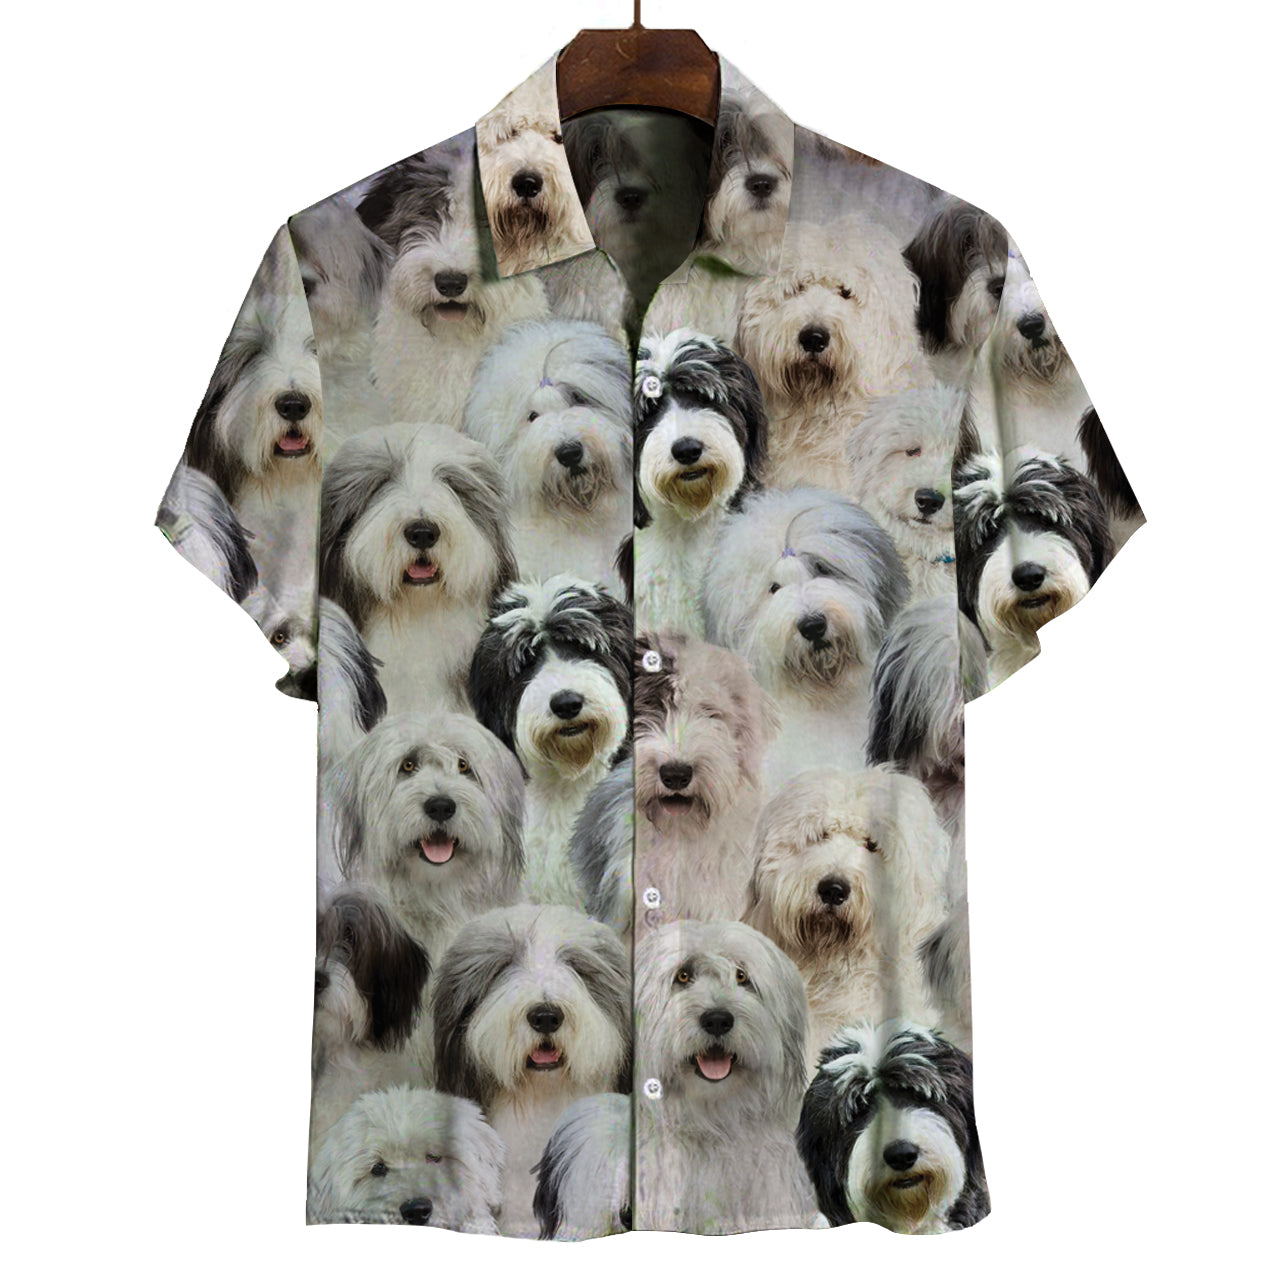 Sie werden einen Haufen alter englischer Schäferhunde haben - Shirt V1